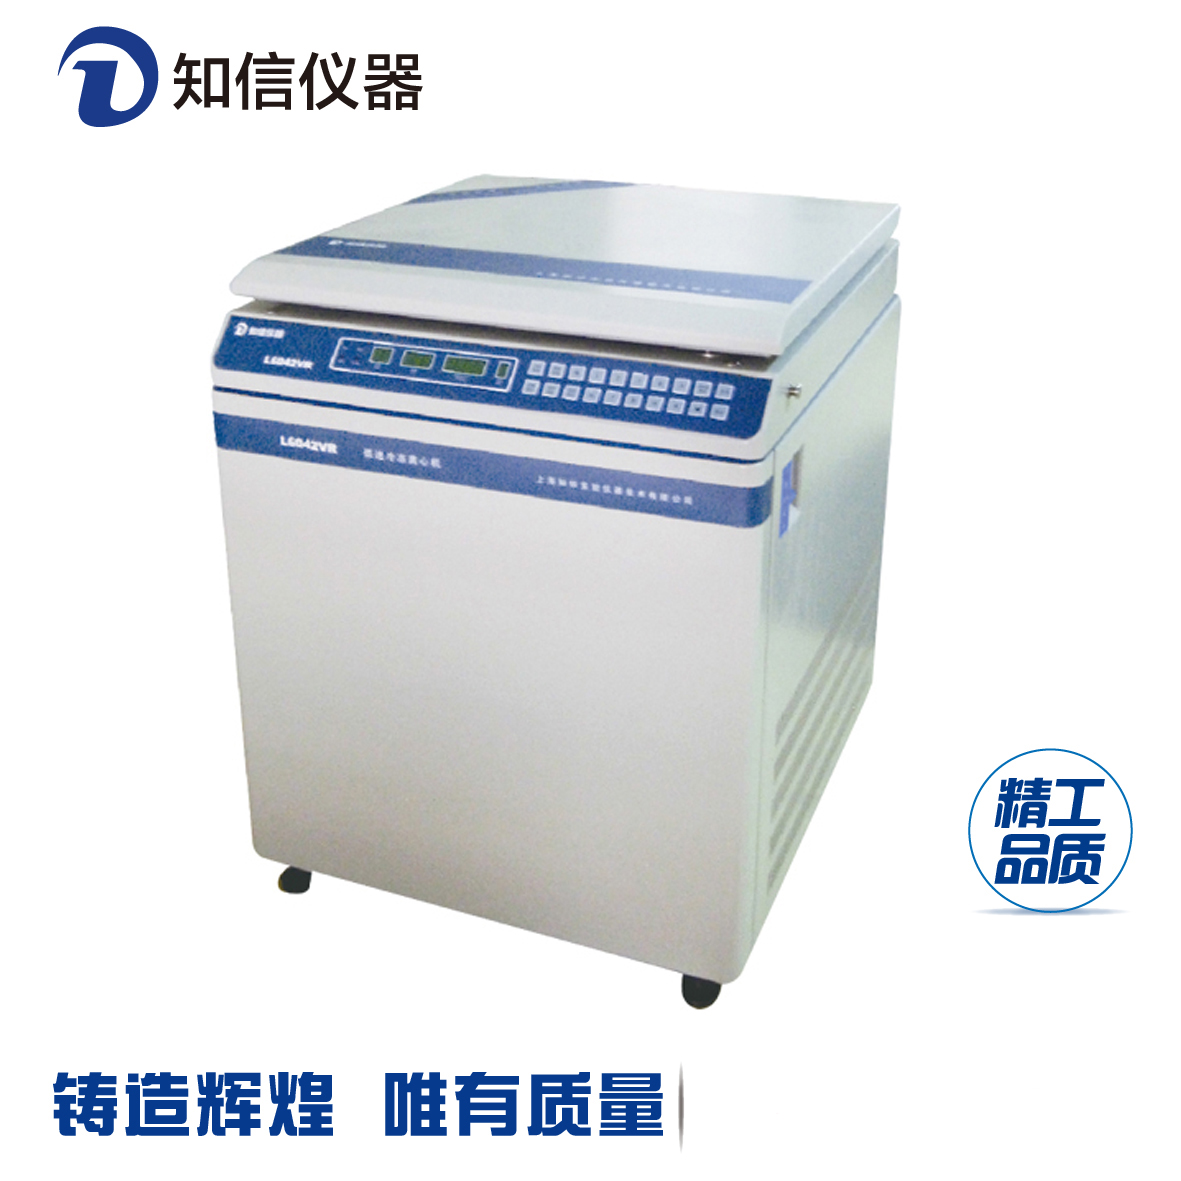 上海知信立式低速冷冻离心机L6042VR医用离心机实验离心机科研离心机图片